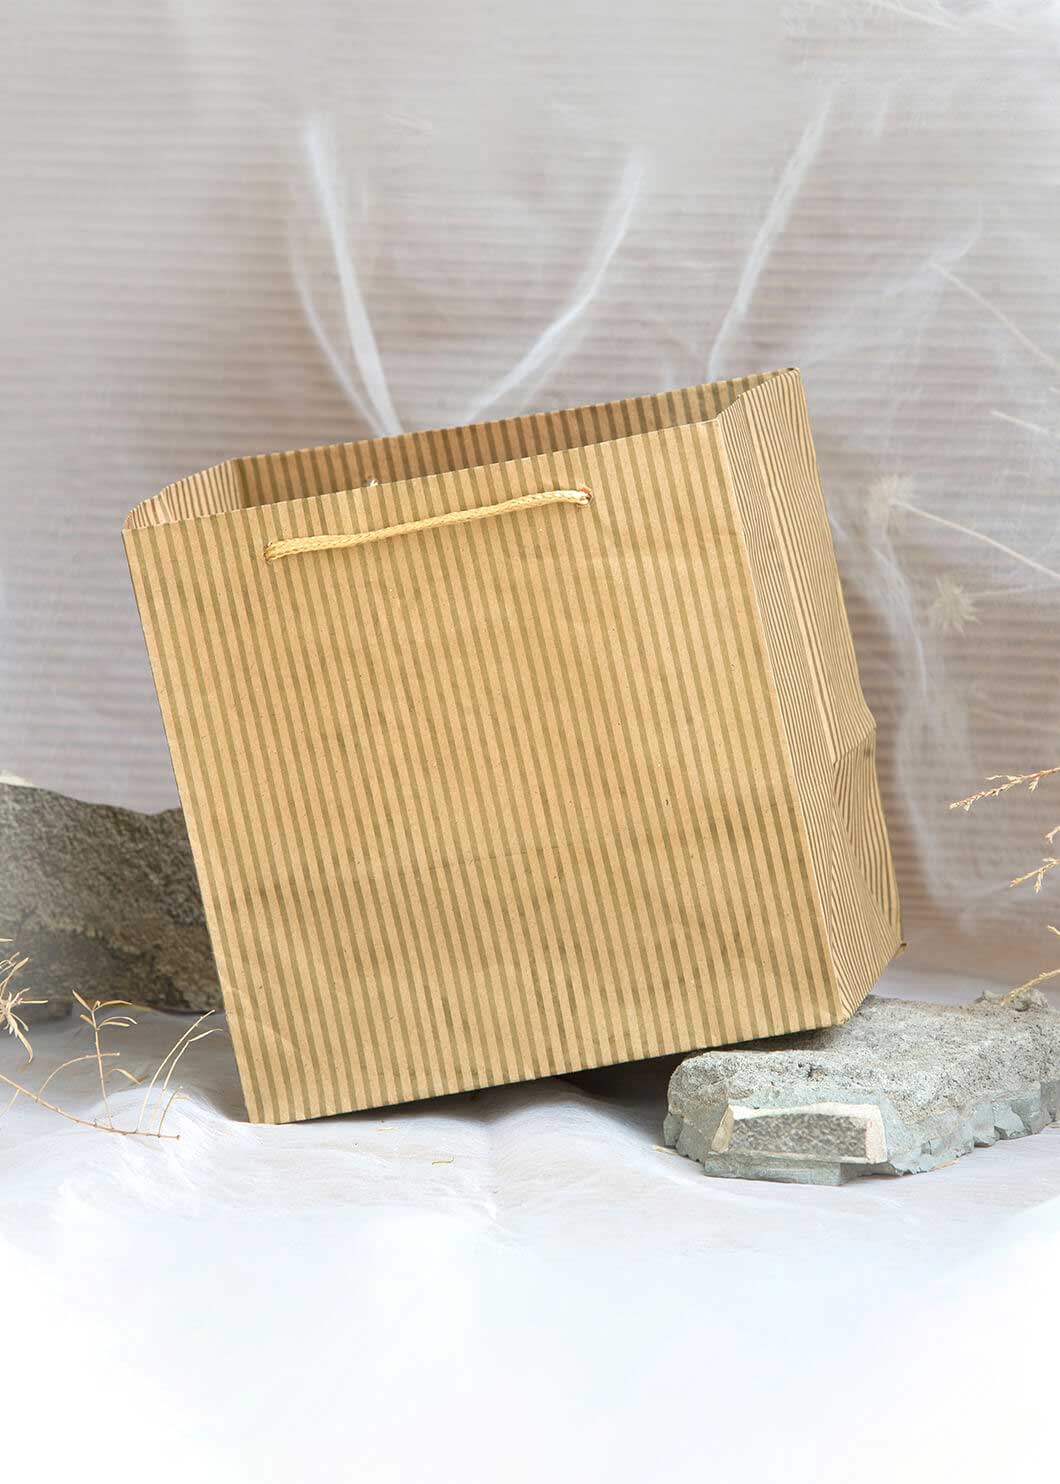 Craft Paper Bag Line Pattern - Craft Bag - Golden Silver Red - 7x5 Paper Bag